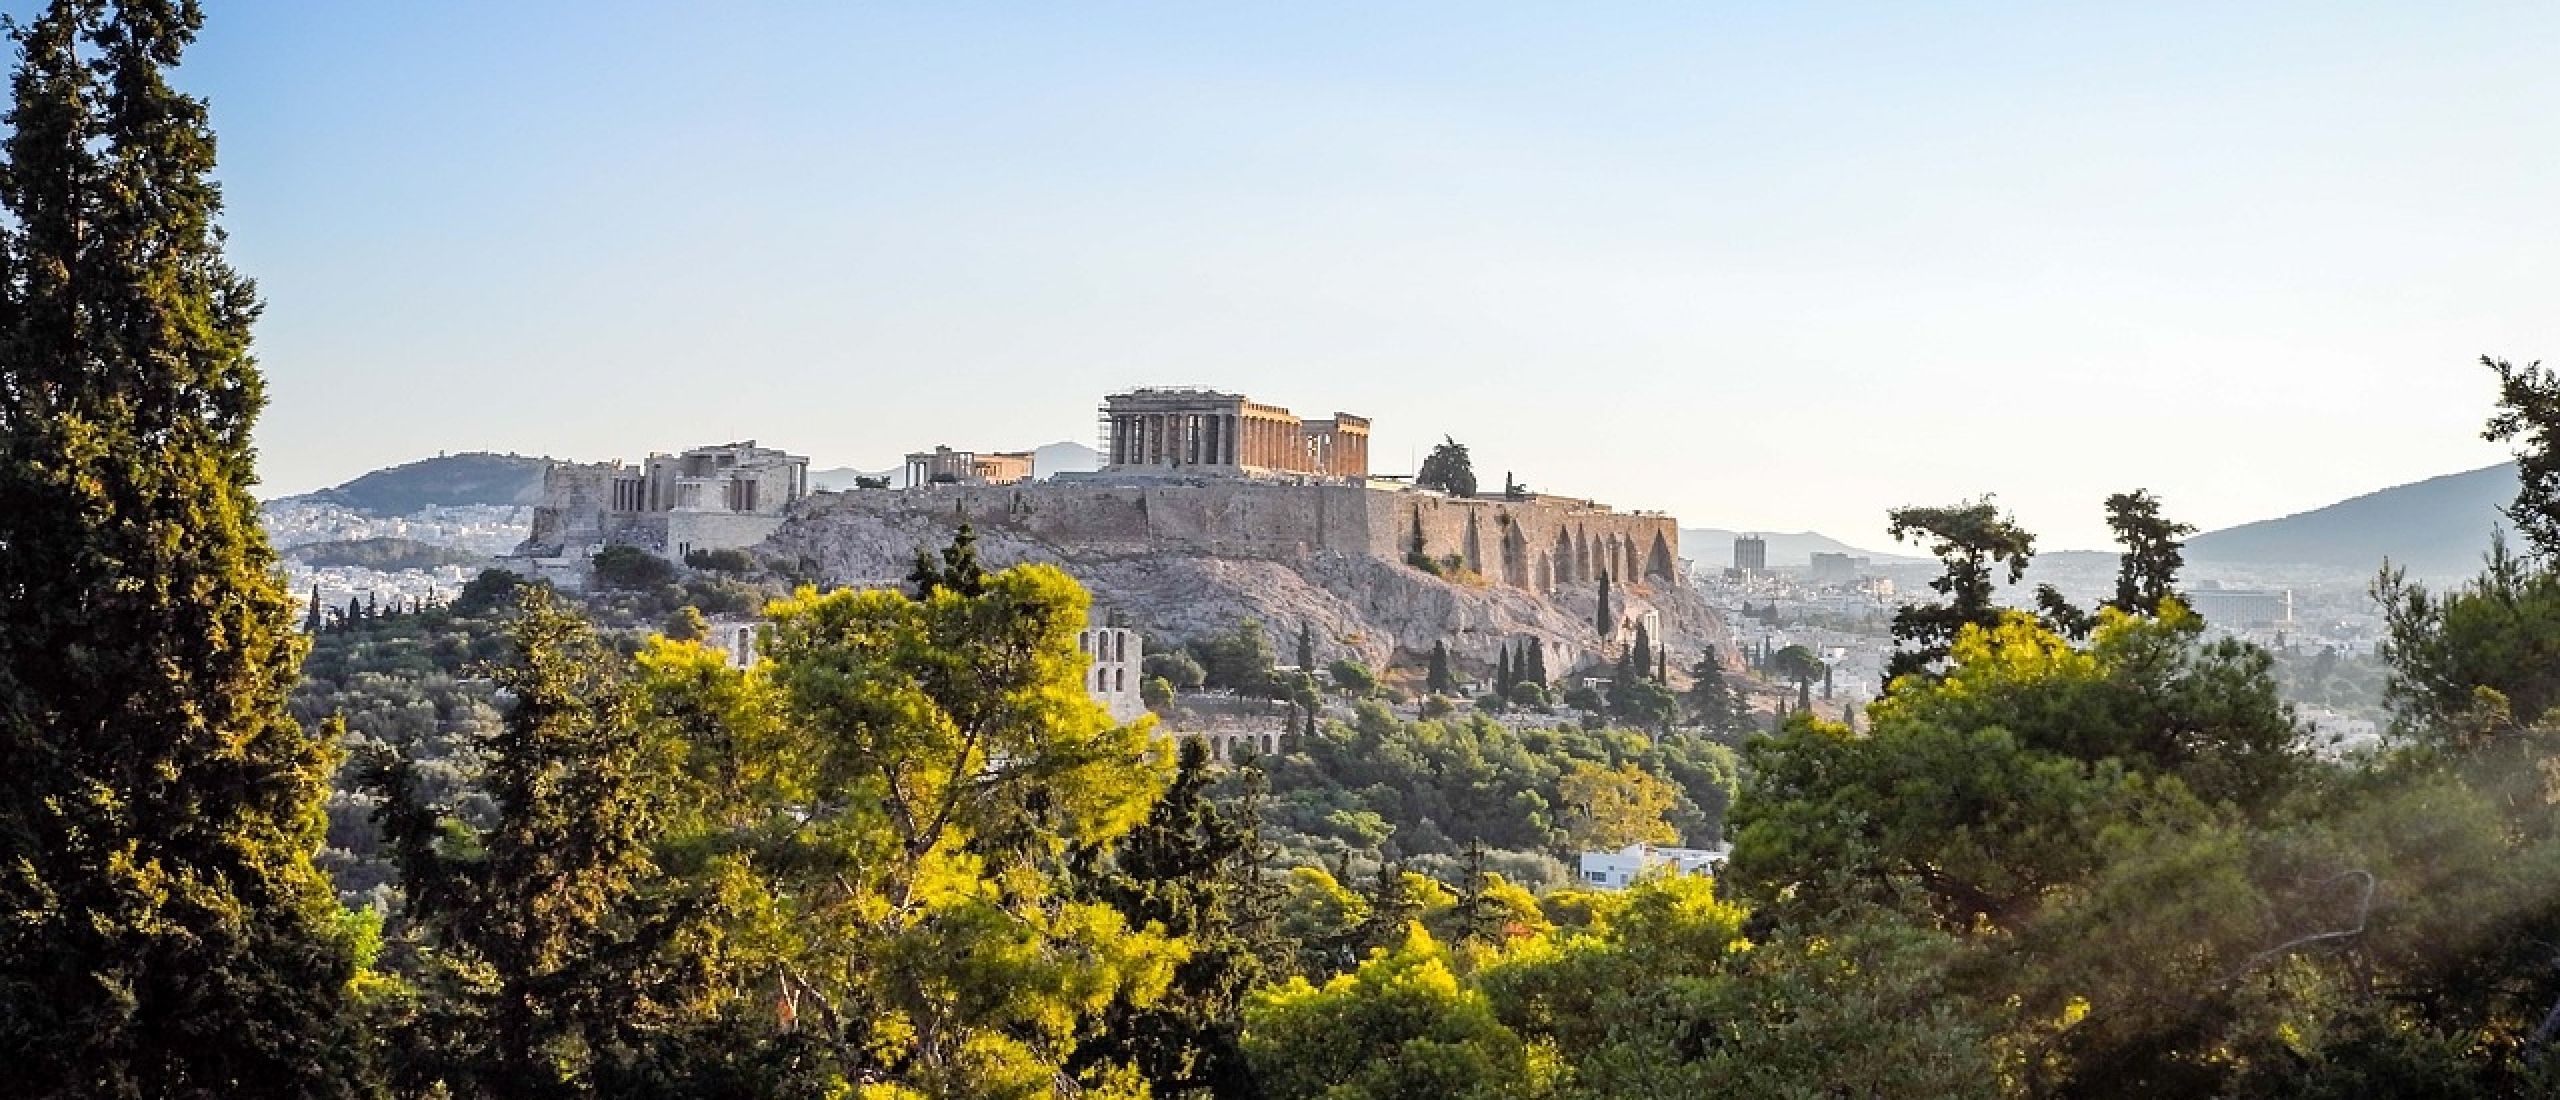 Athene, een stap in de oudheid en meer